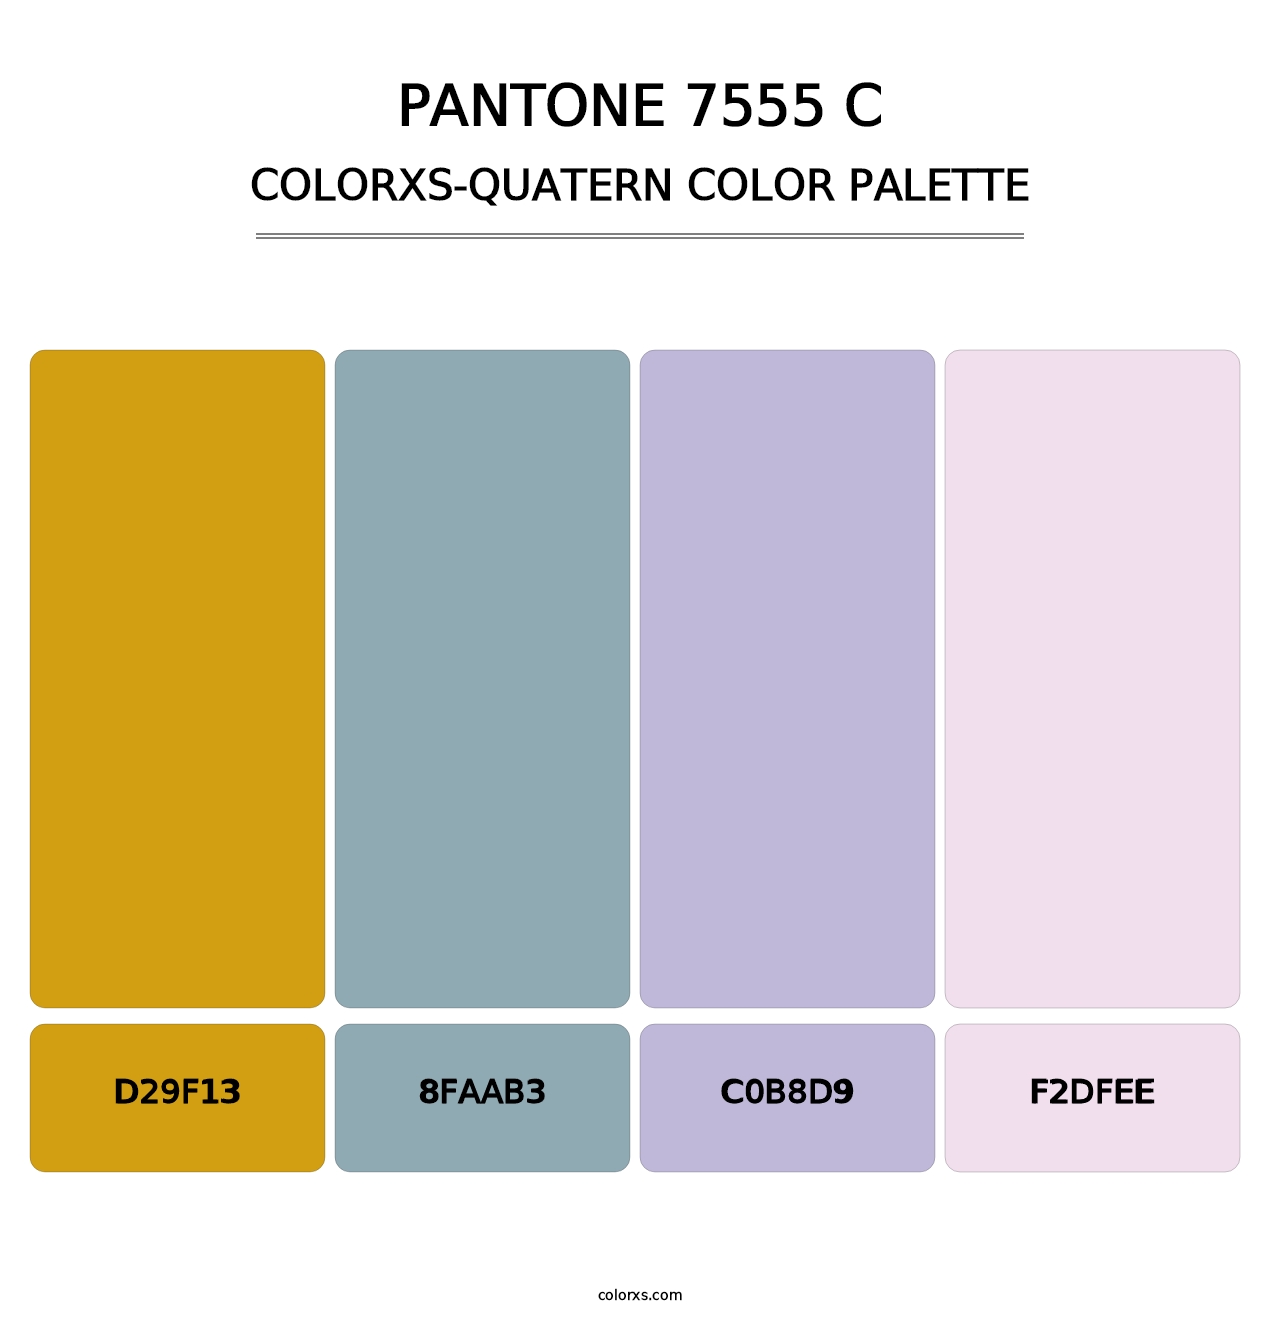 PANTONE 7555 C - Colorxs Quatern Palette